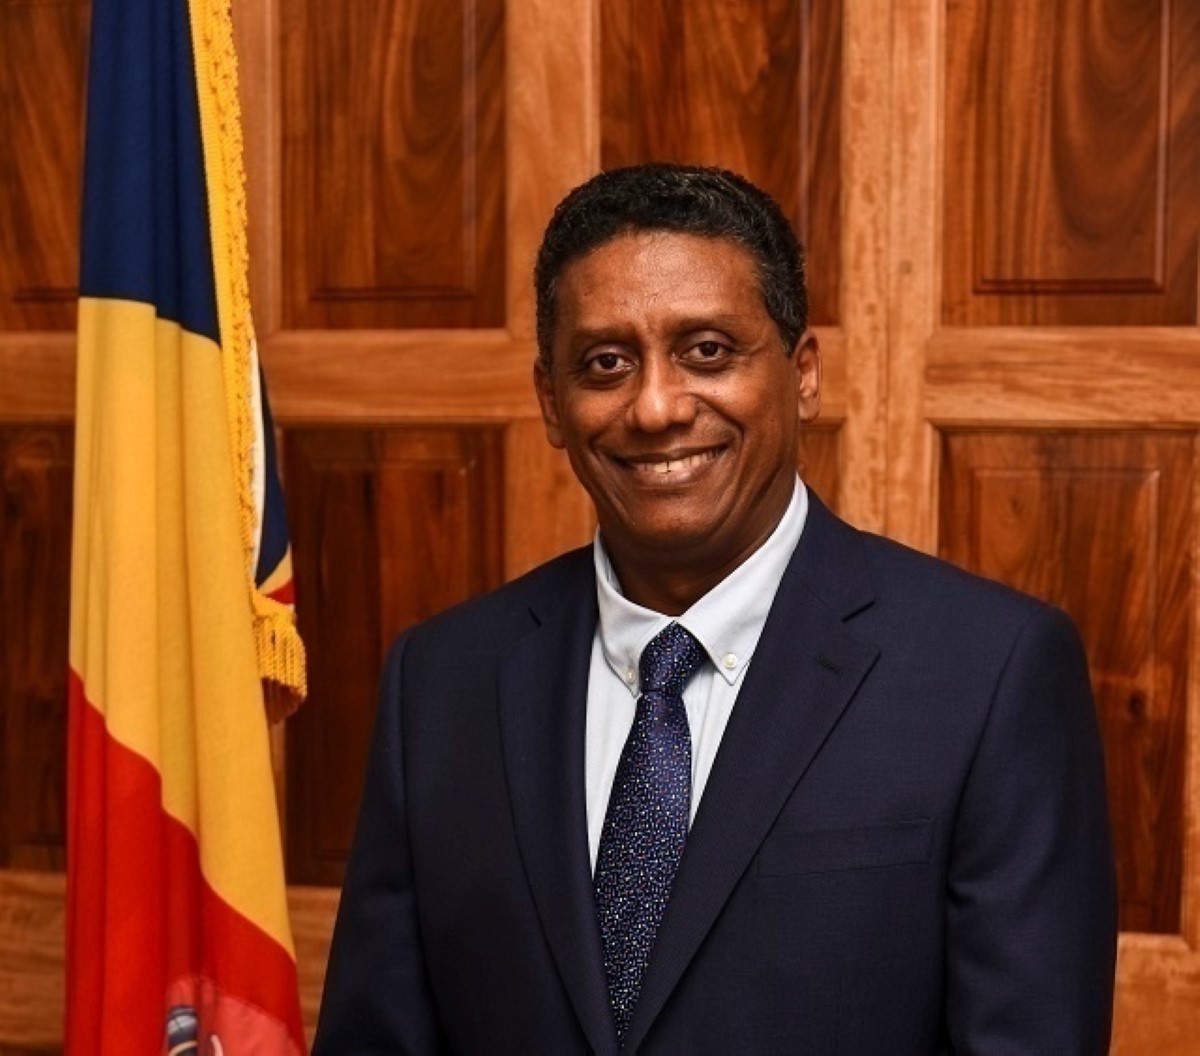 [Seychelles] Le président Faure annonce une hausse de près de 10 % du salaire minimum en 2020